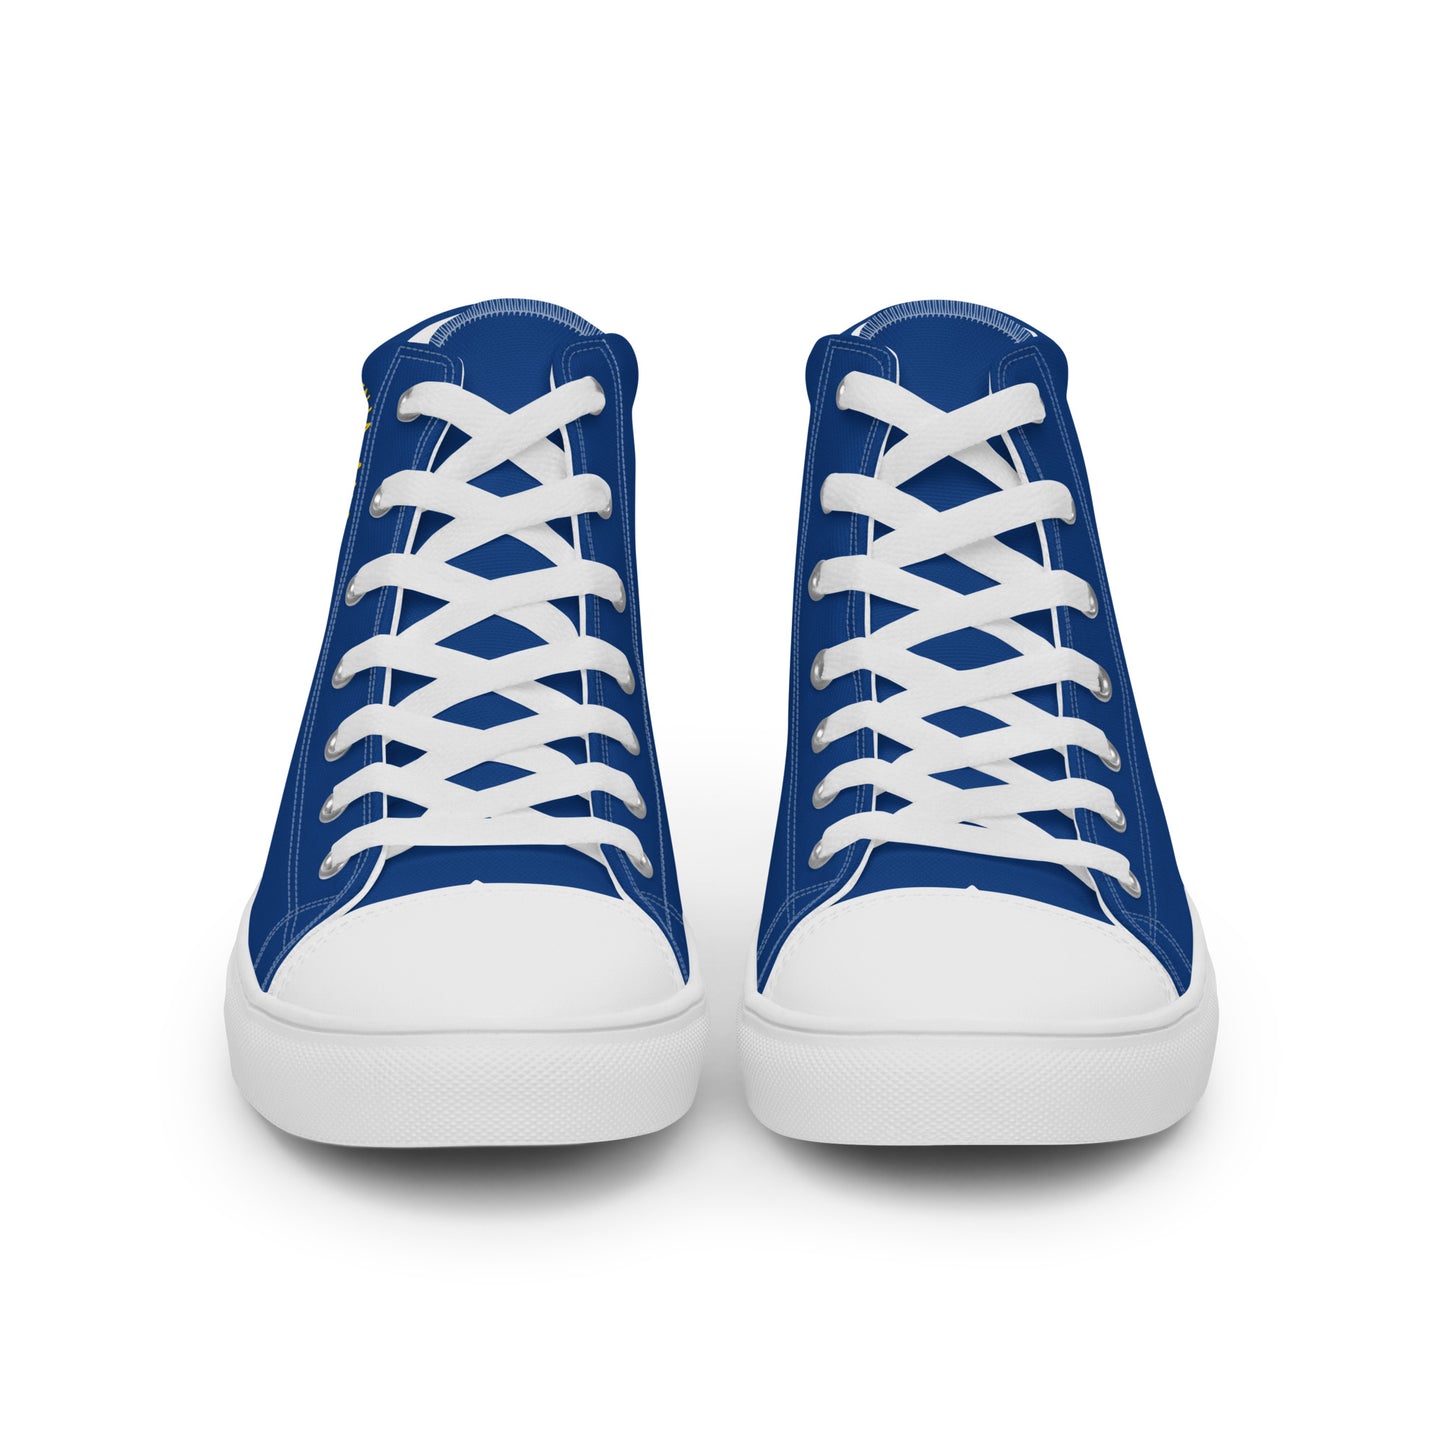 El Salvador - Women - Blue - High top shoes